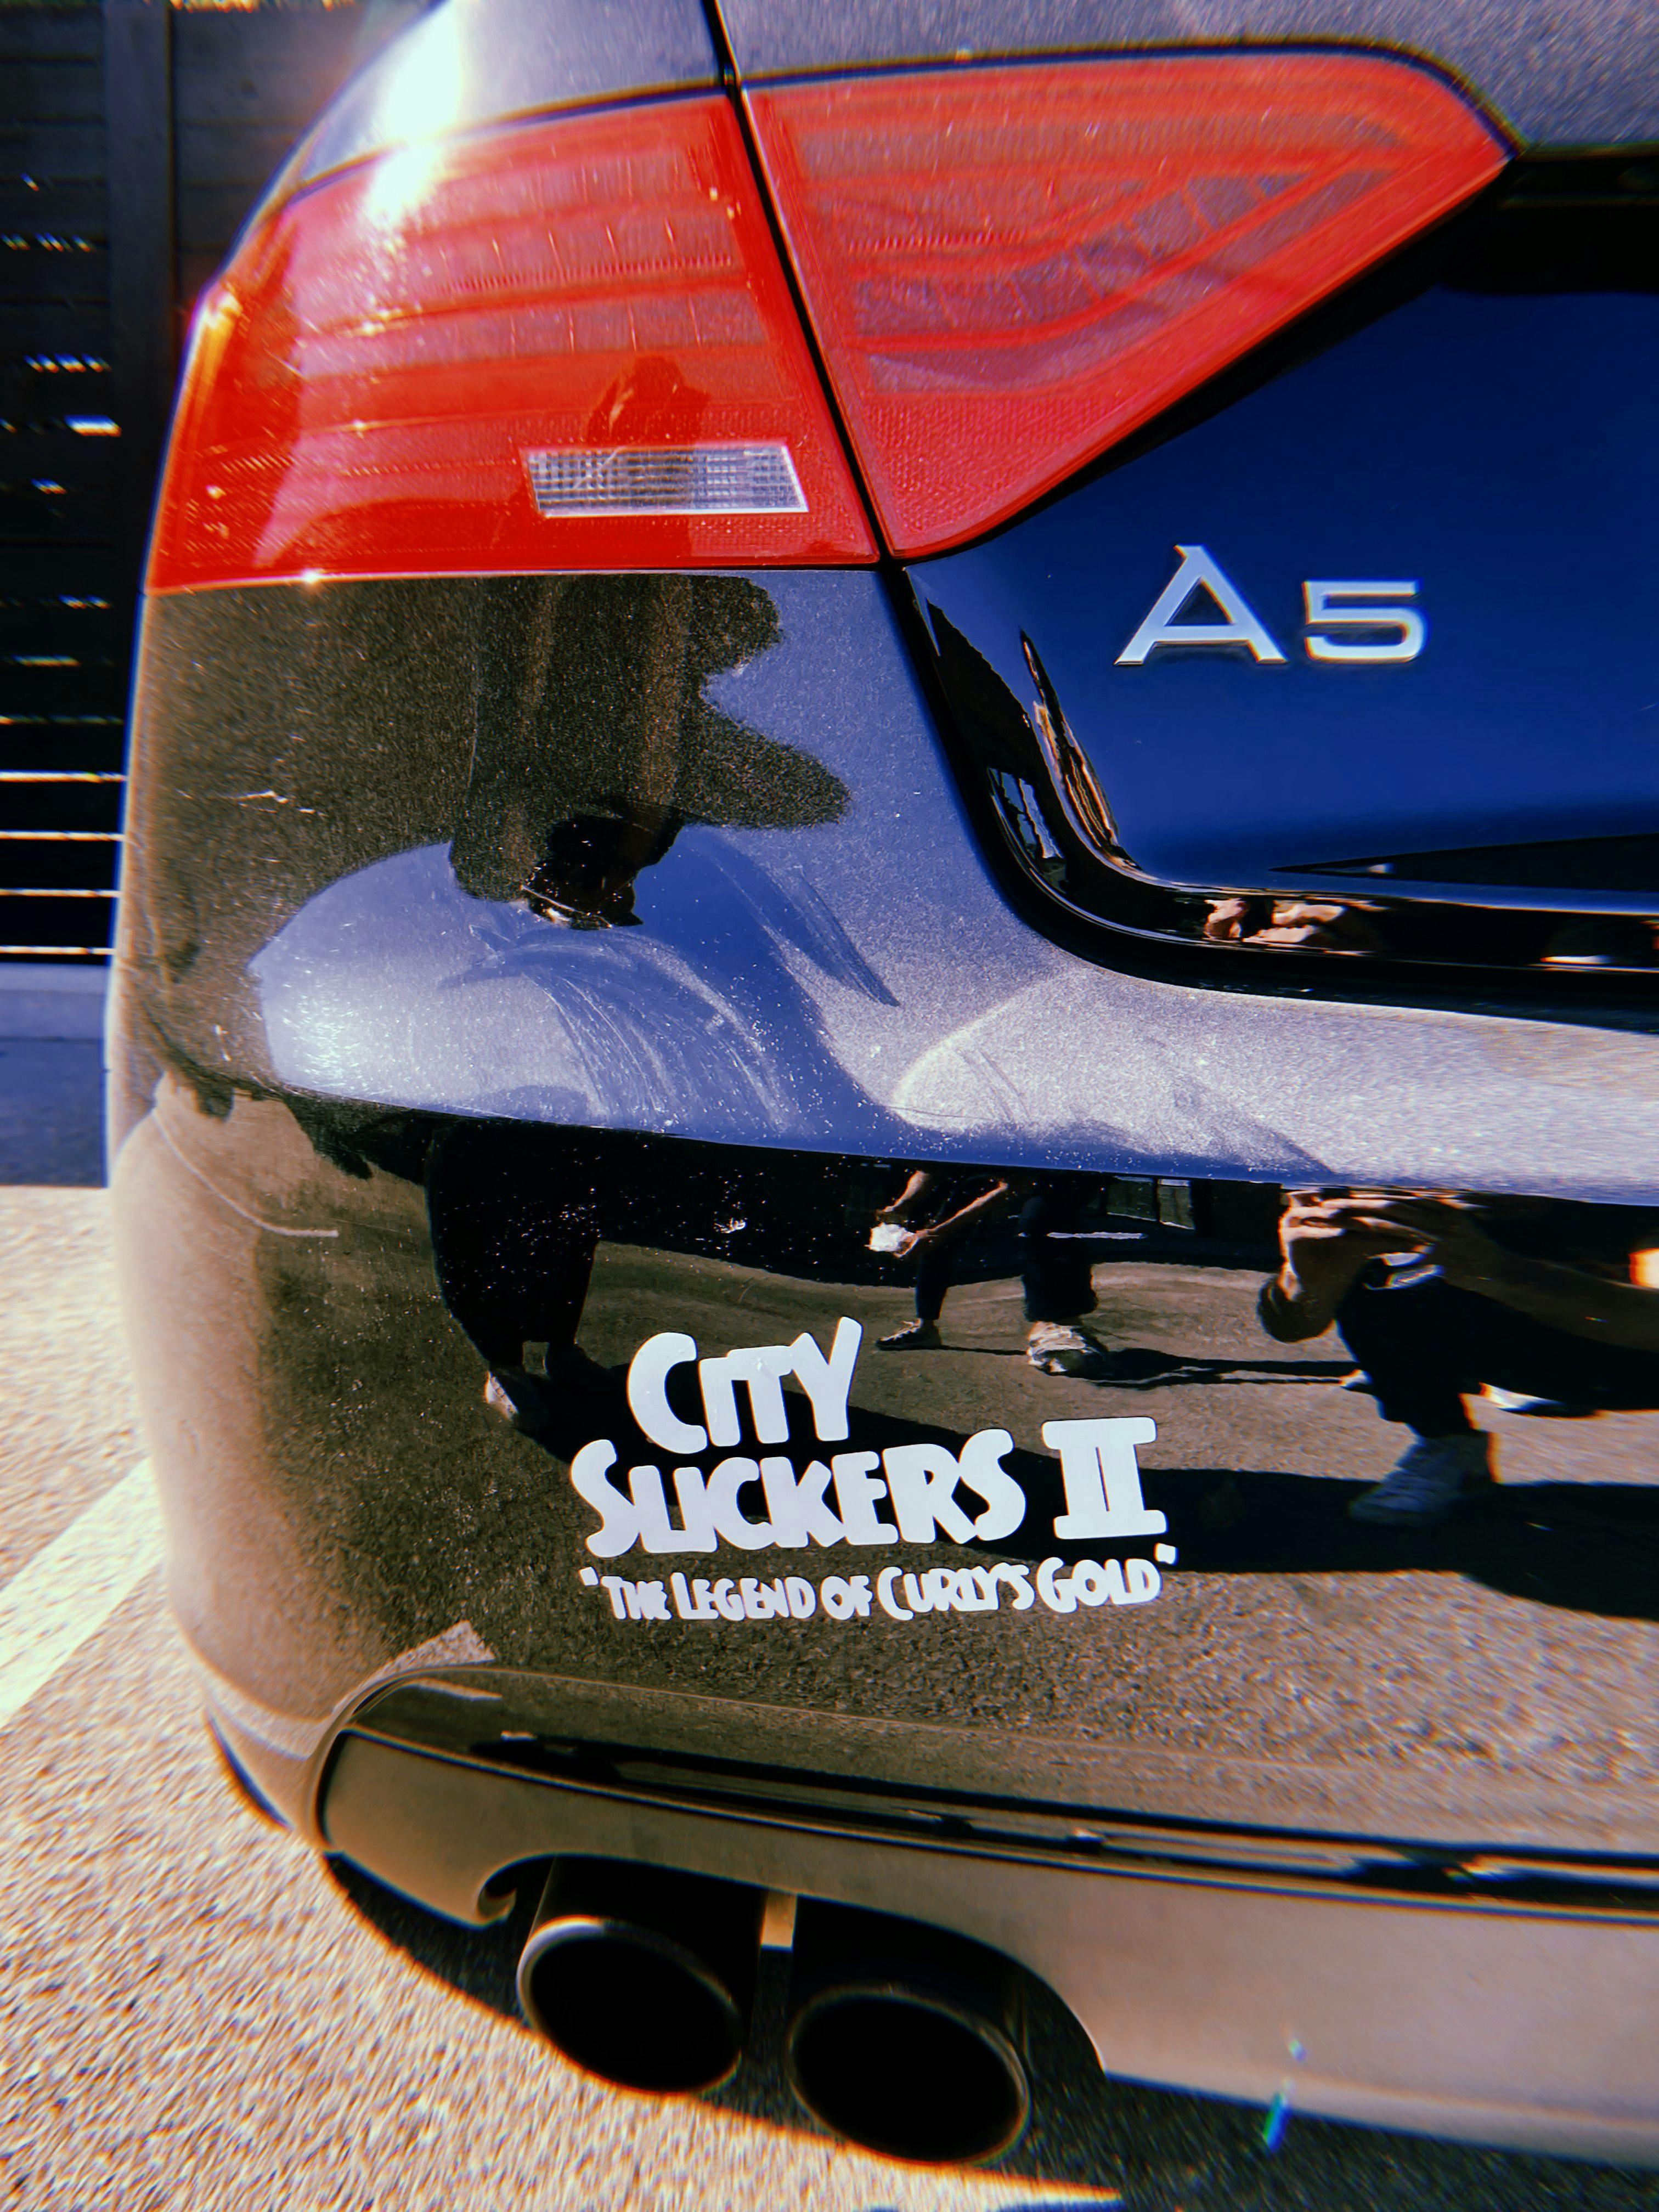 City Slickers II bumper sticker on an Audi